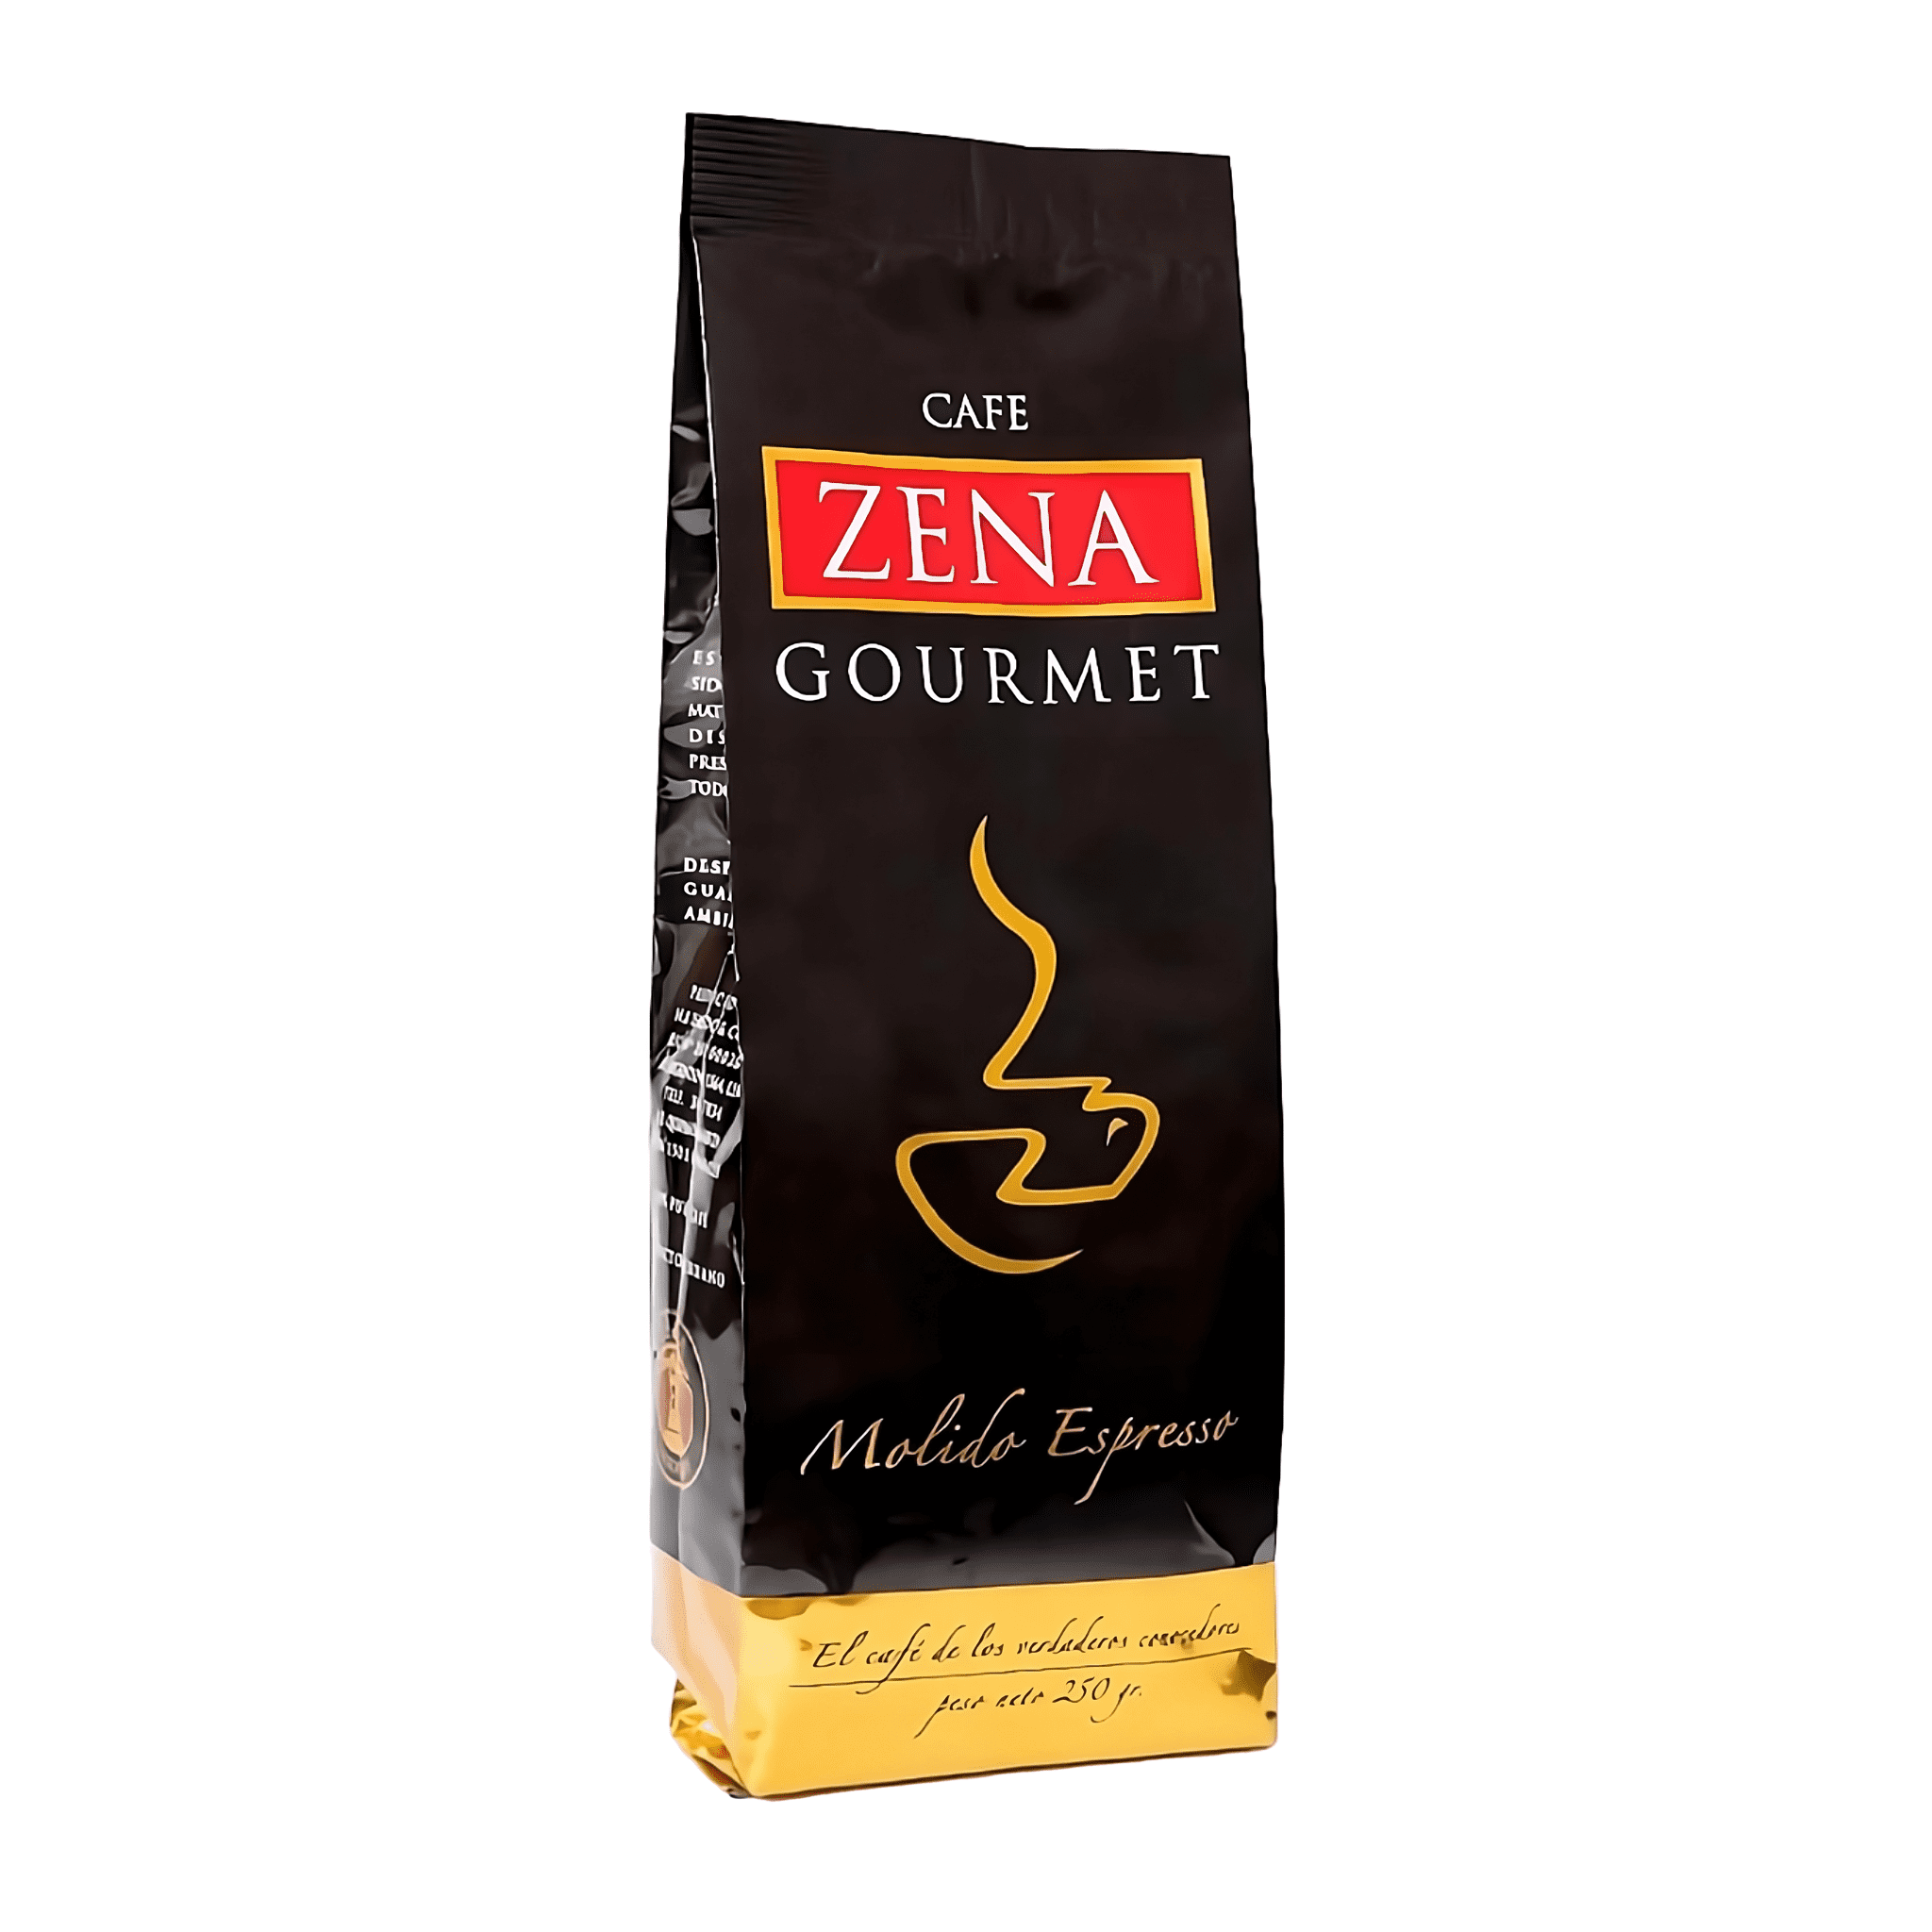 Café Zena Gourmet 250g grano molido espresso